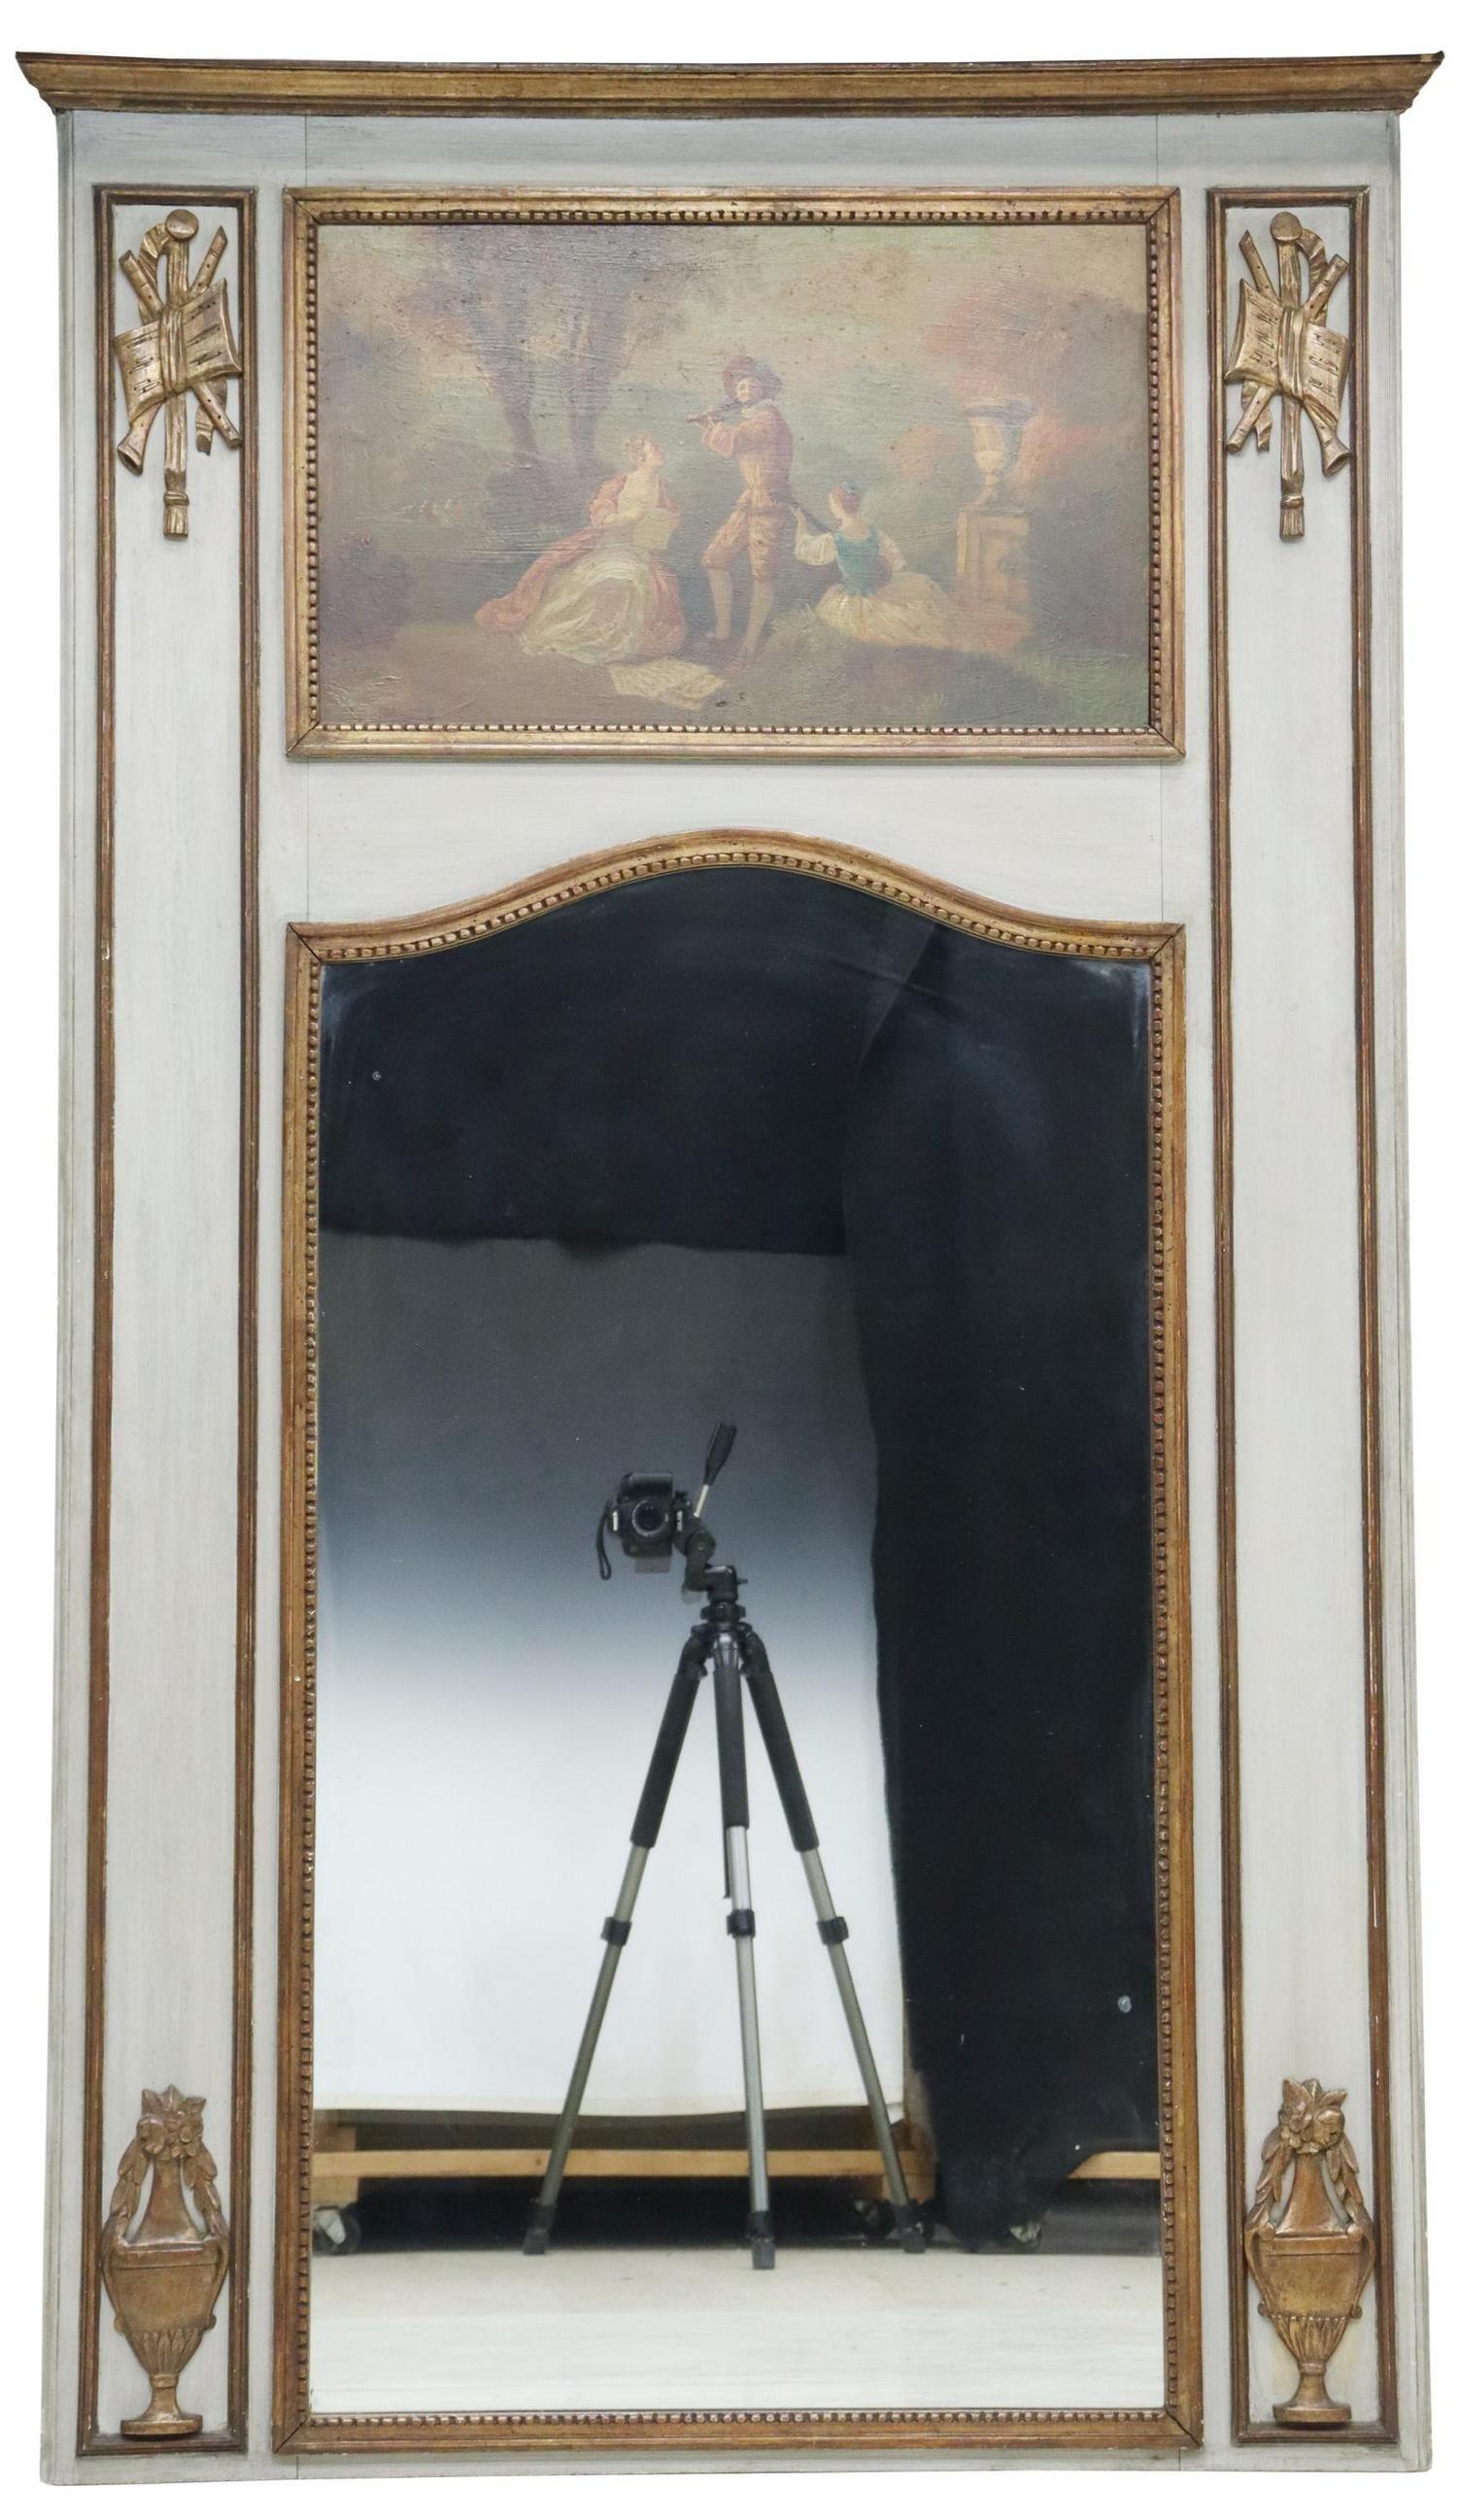 Miroir trumeau ancien de style Louis XVI, doré et peint, C.C. Le grand miroir trumeau présente un cadre peint, avec des instruments de musique dorés appliqués et des urnes feuillagées, une peinture à l'huile sur panneau représentant des musiciens,